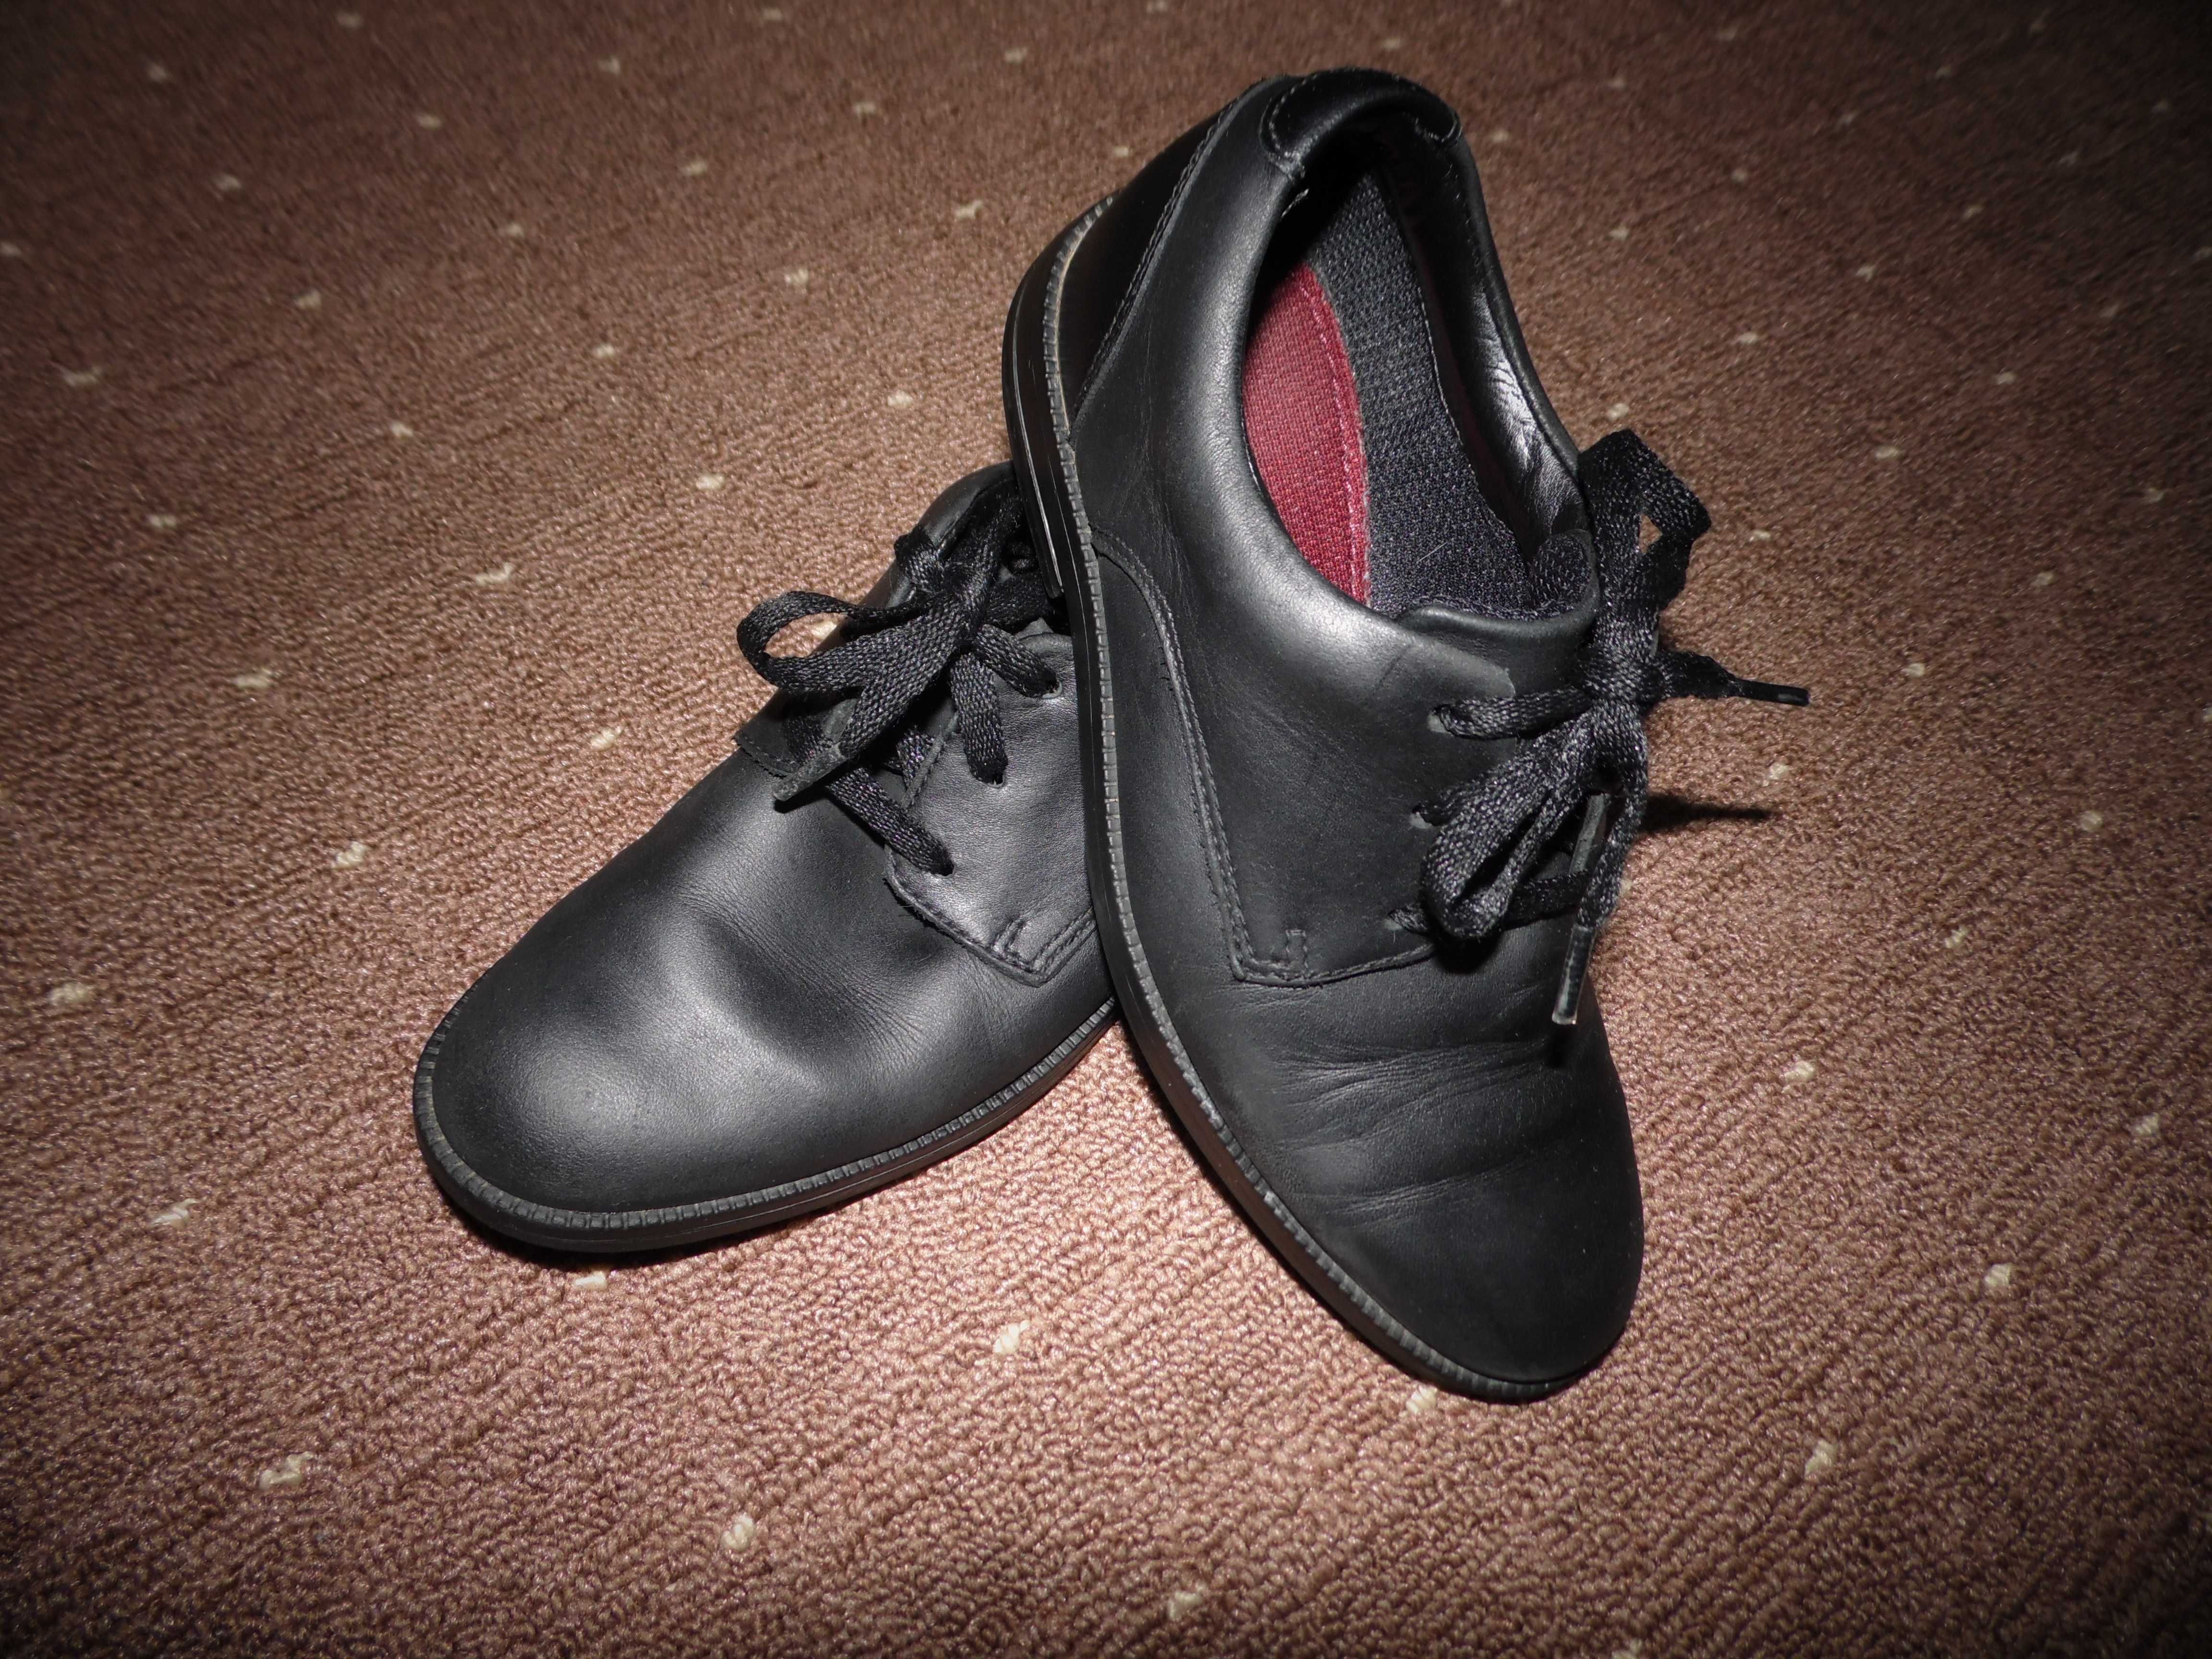 Кожаные туфли Clarks размер 32 стелька 20-20.5 см